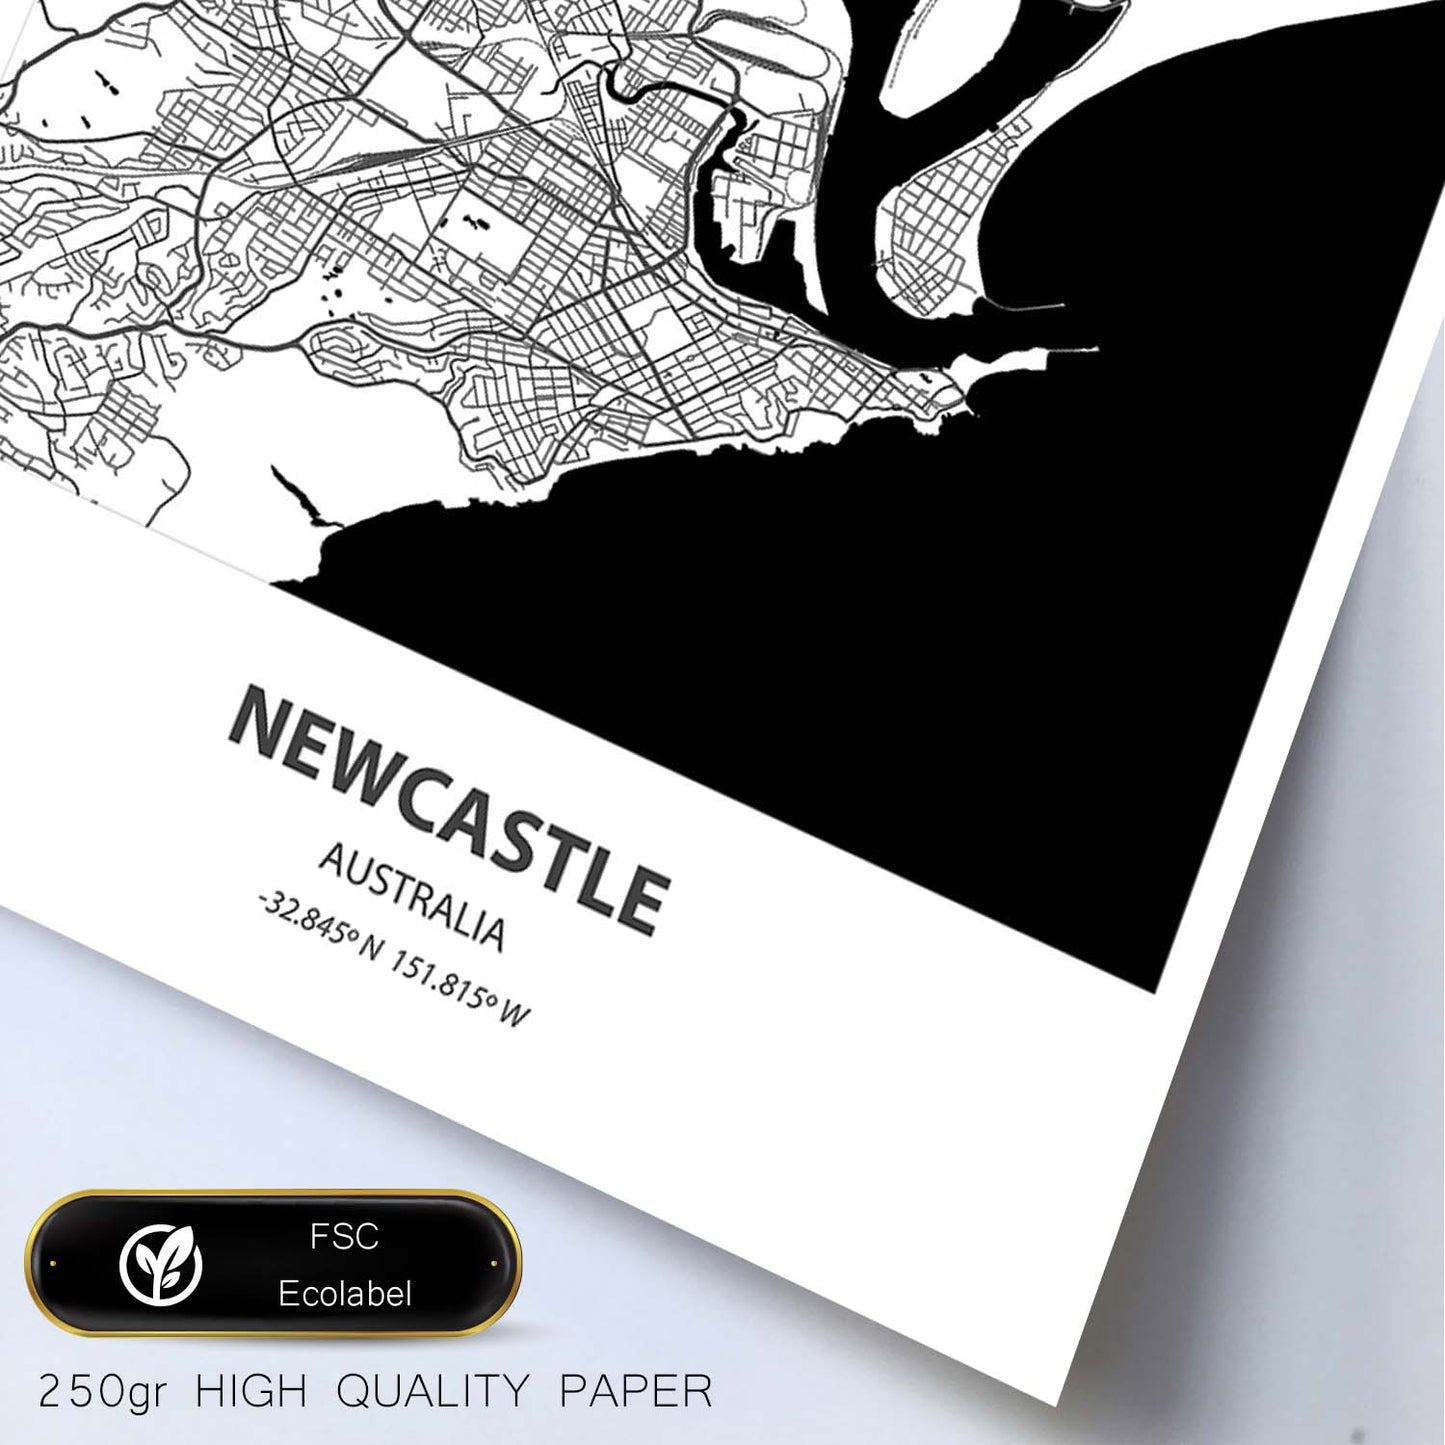 Poster con mapa de Newcastle - Australia. Láminas de ciudades de Australia con mares y ríos en color negro.-Artwork-Nacnic-Nacnic Estudio SL